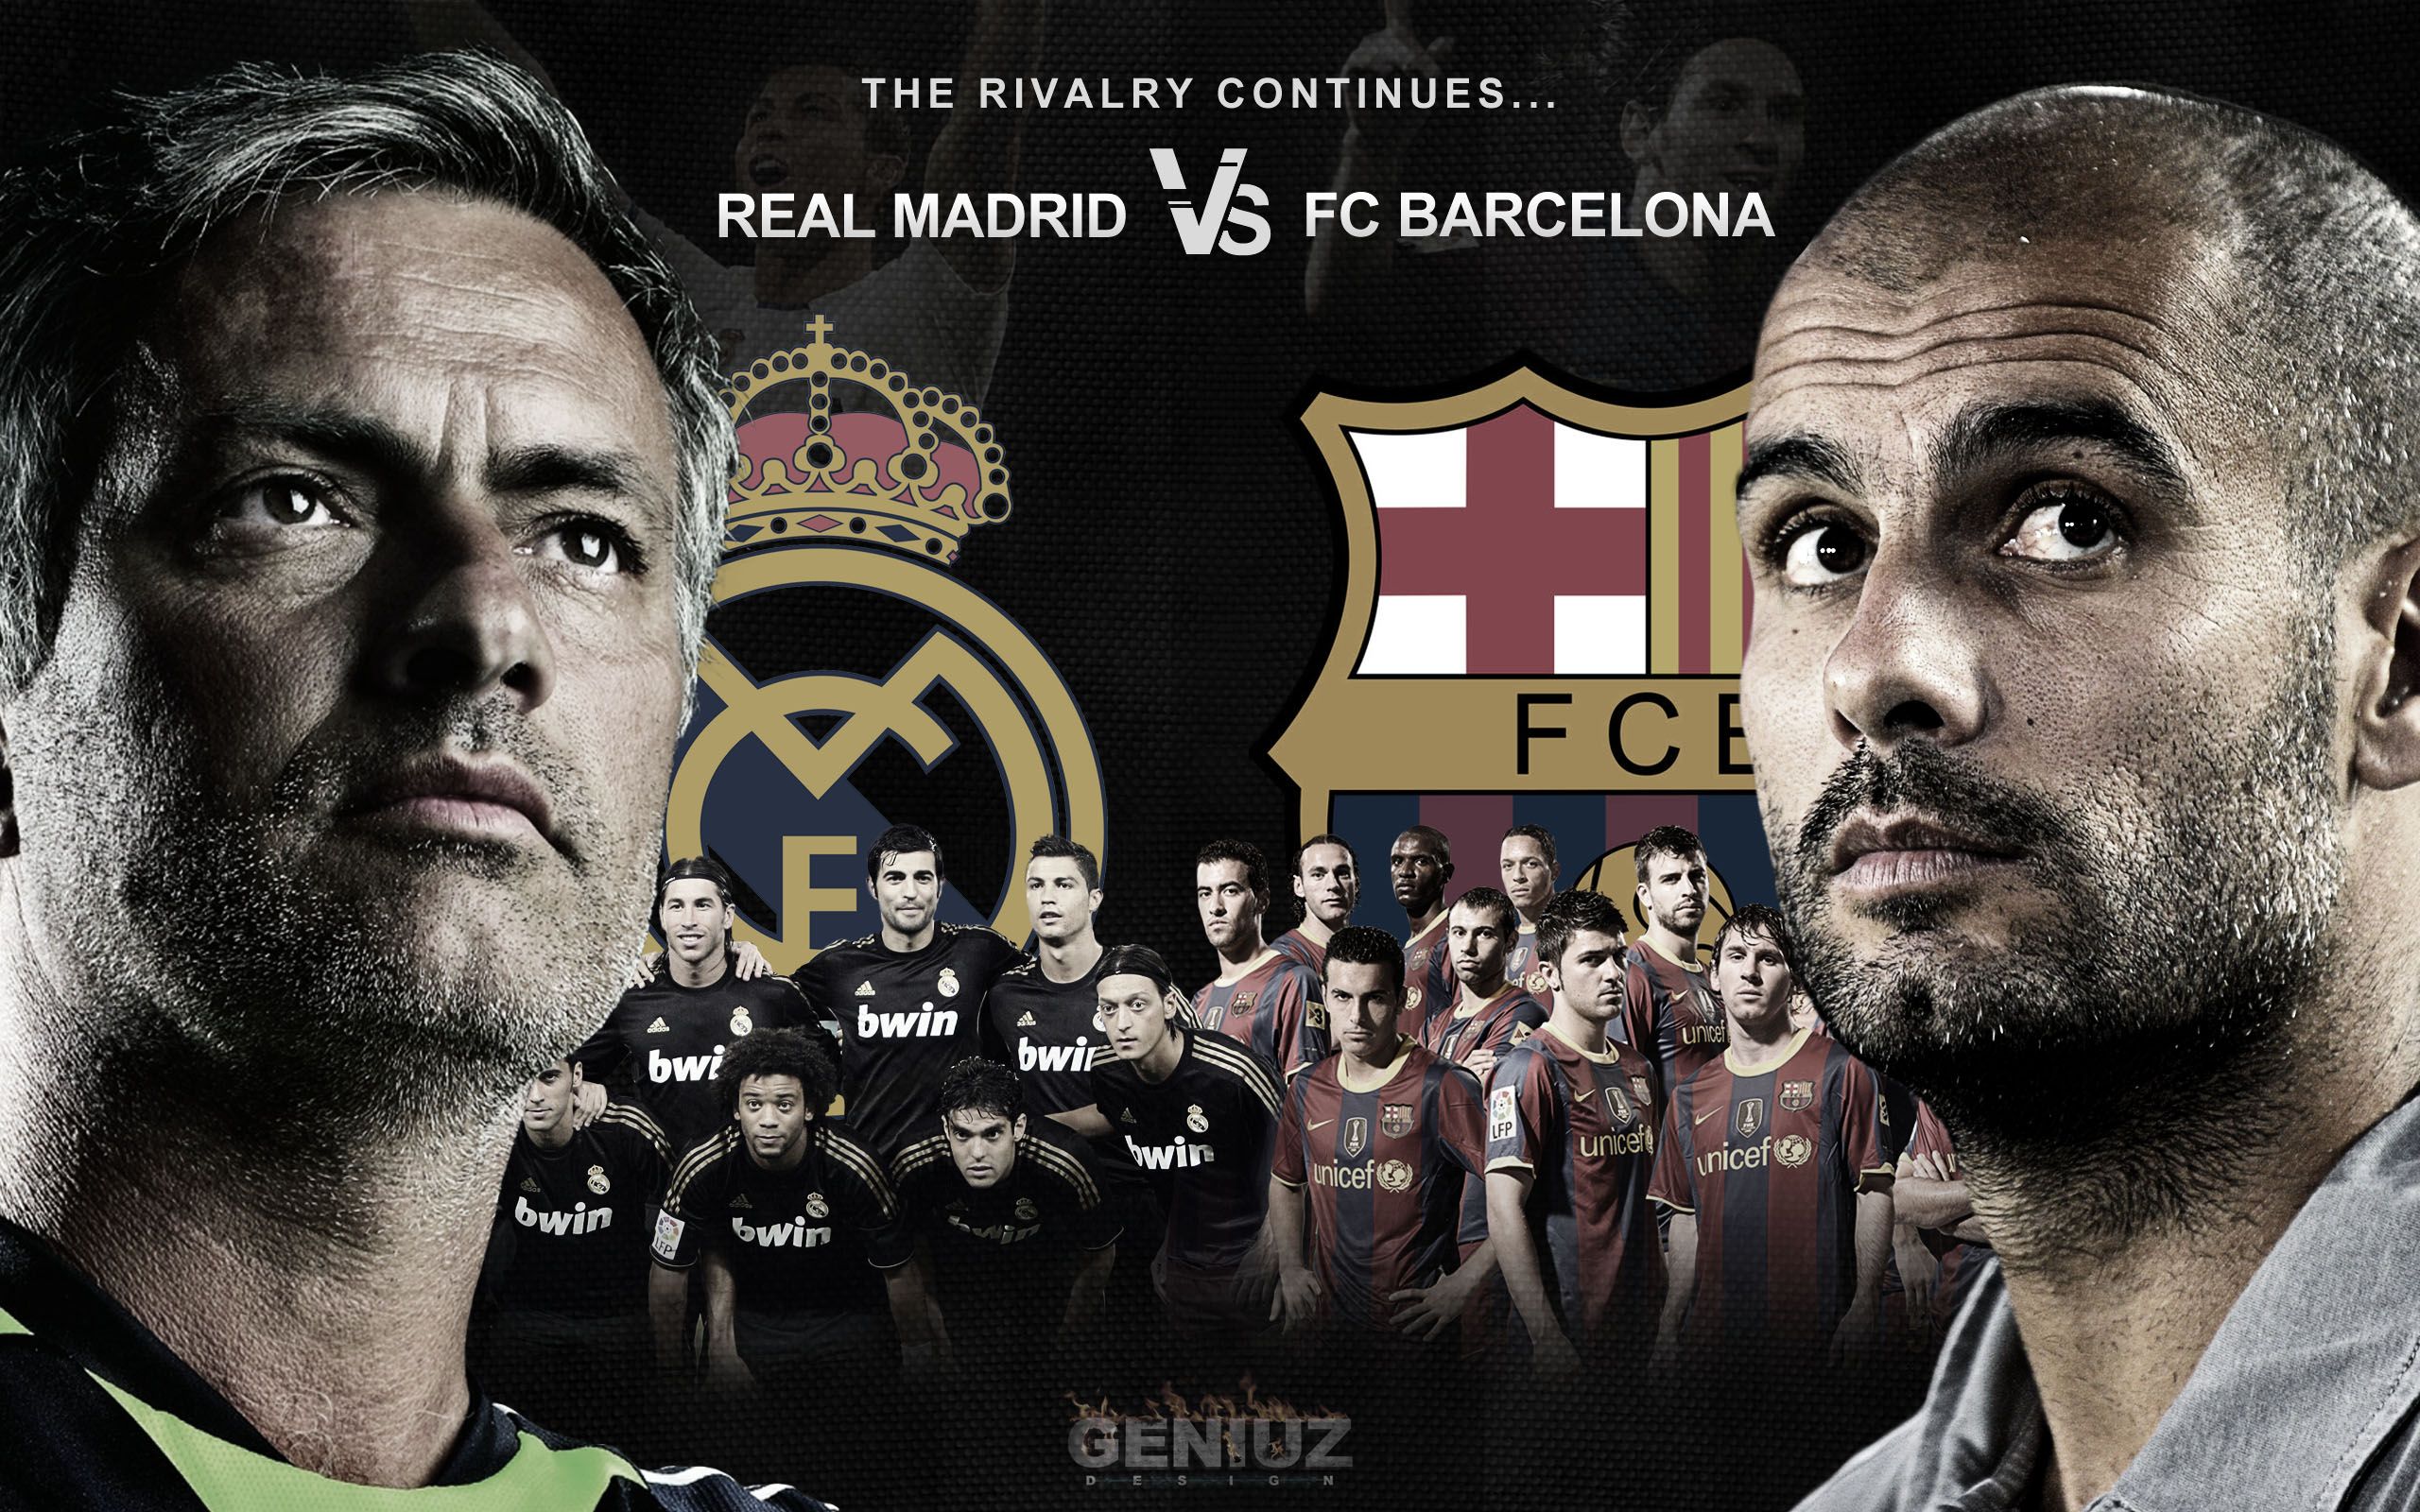 Real Madrid vs FC Barcelona – The Rivalry Continues | Geniuz Design